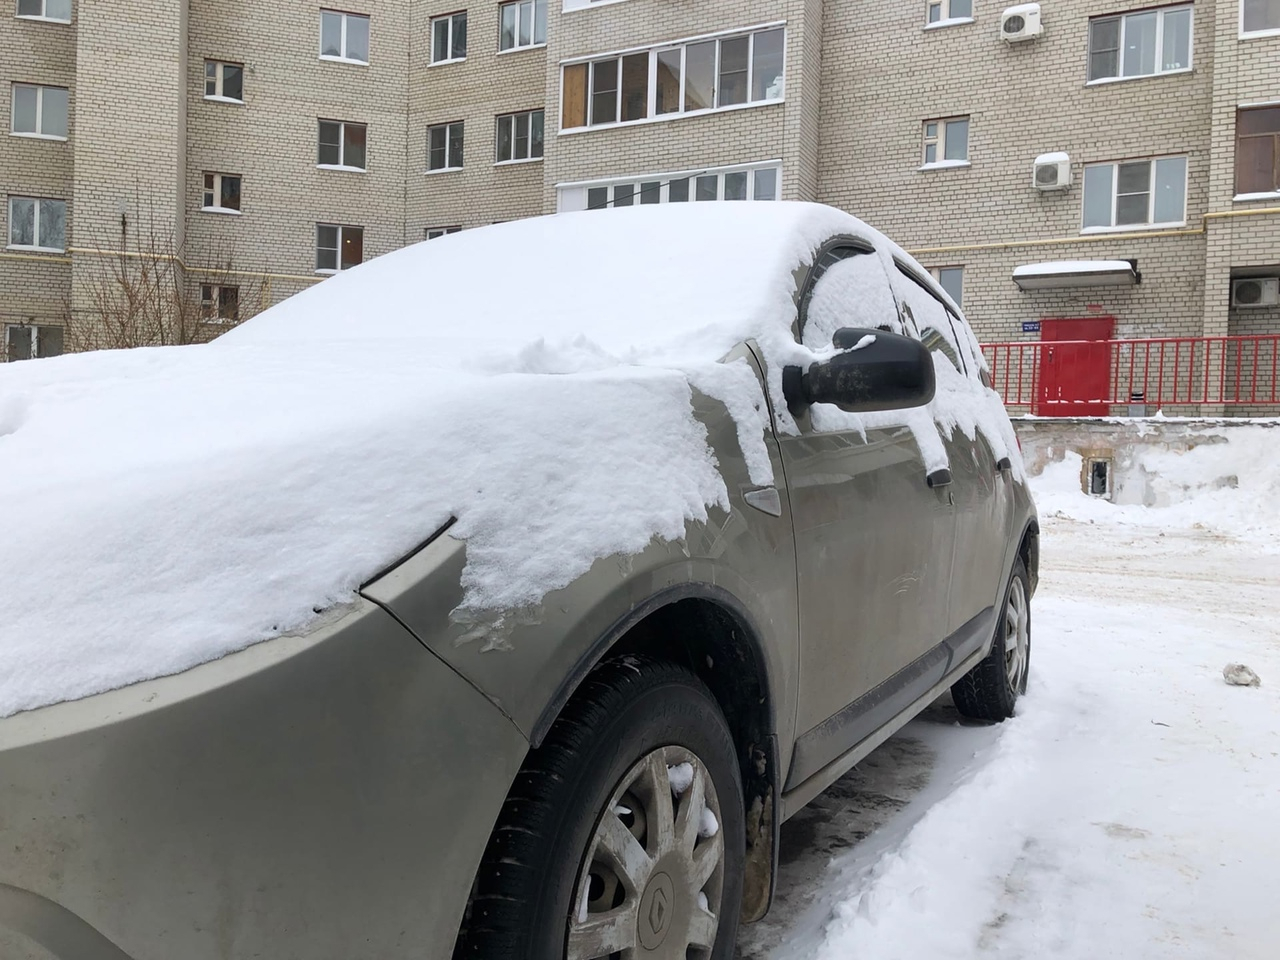 12-летний рязанец предлагает почистить снег за 50 рублей. Родители гордятся самостоятельностью сына